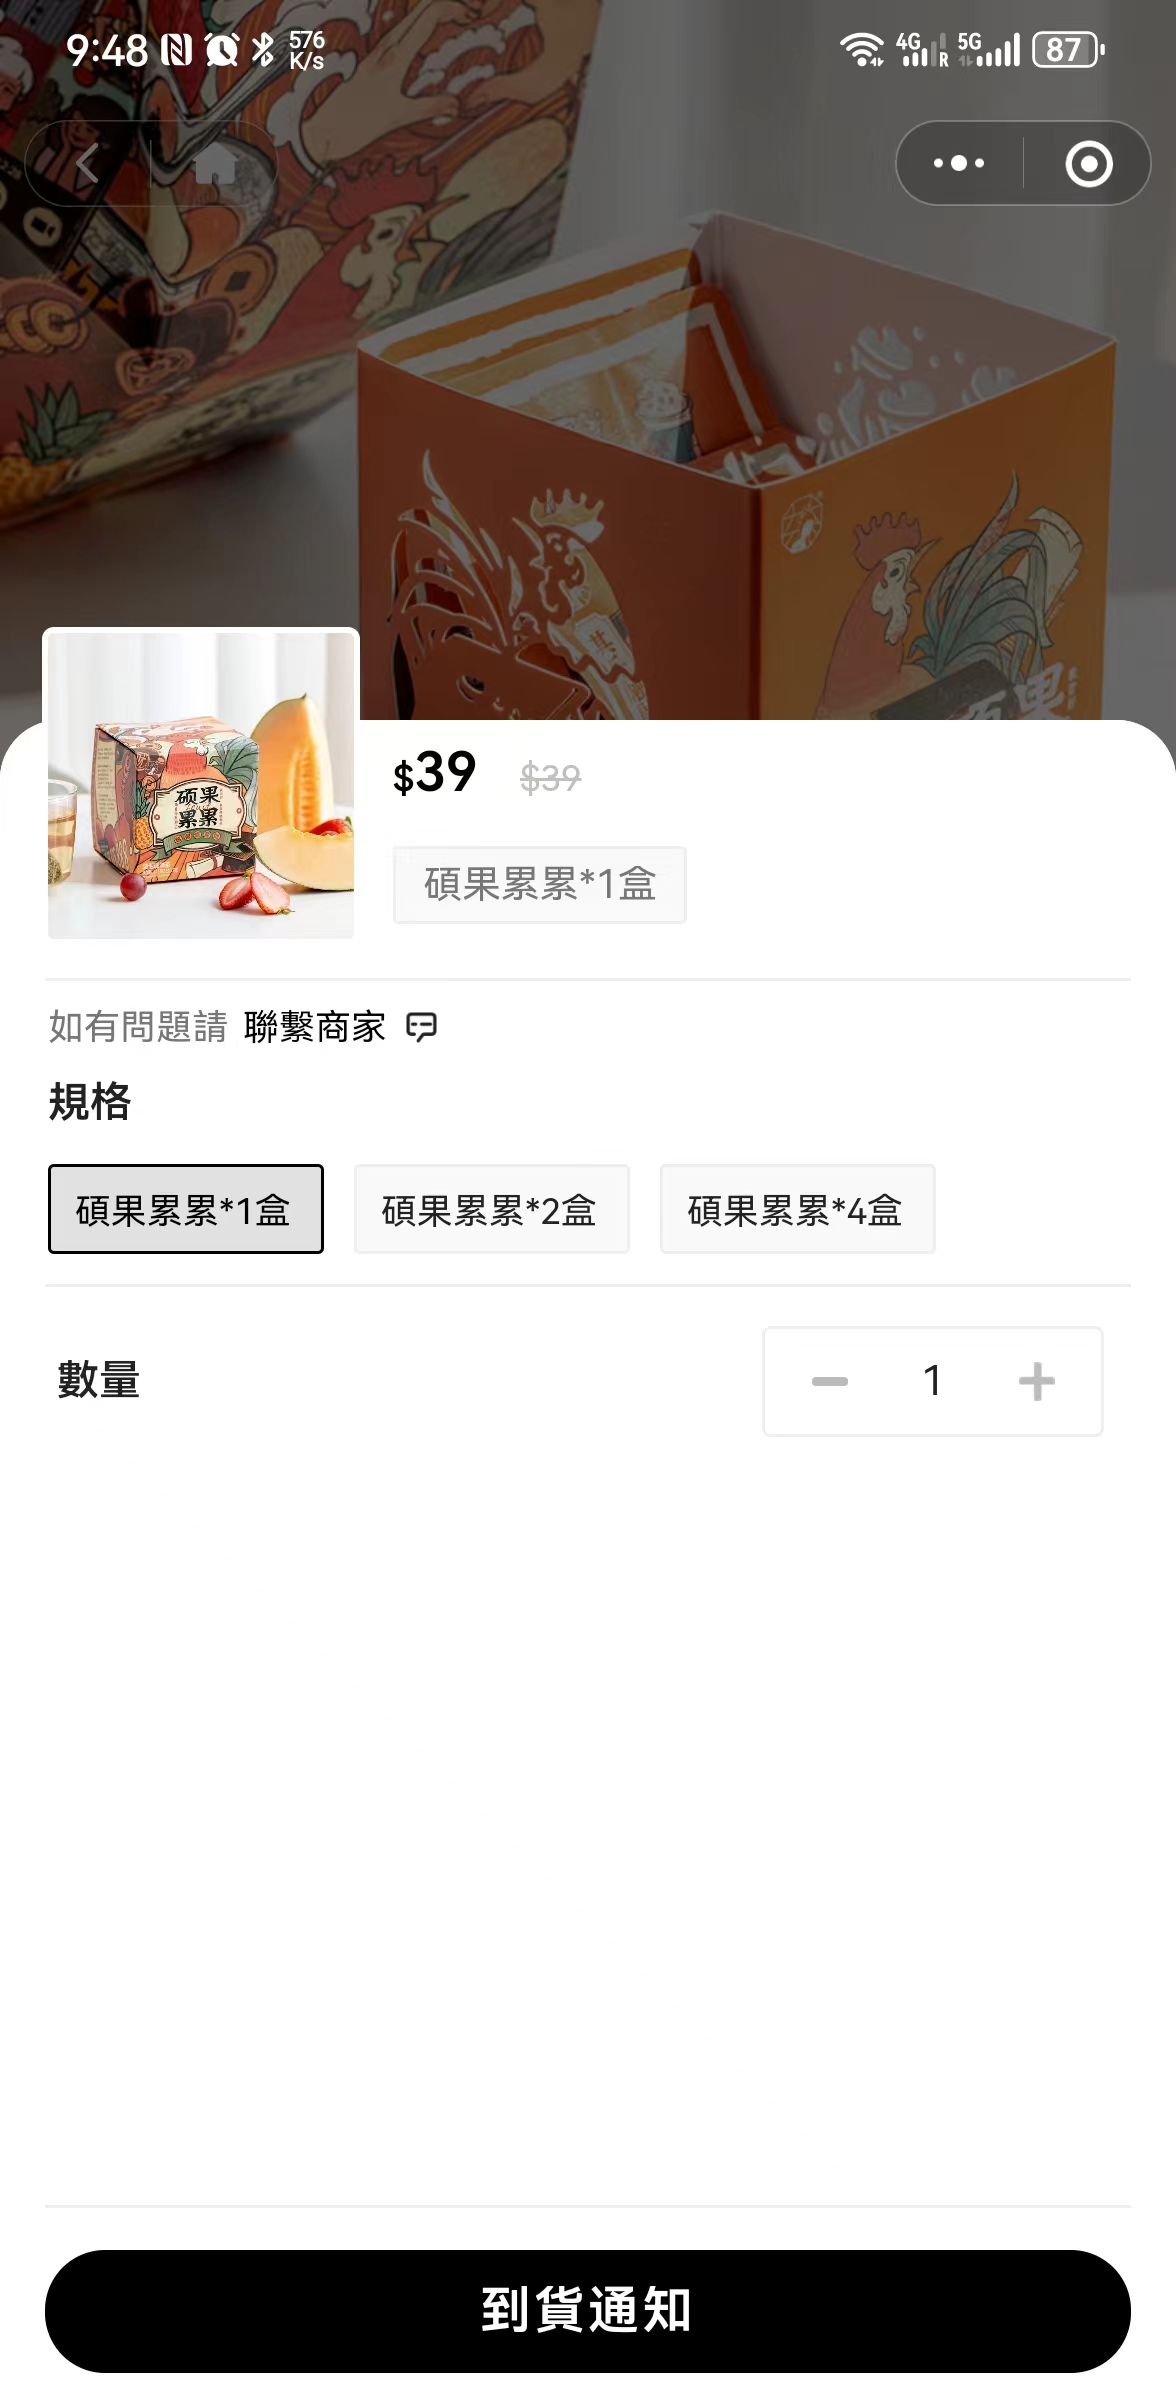 BuPopShop WeChat mini program Product Page